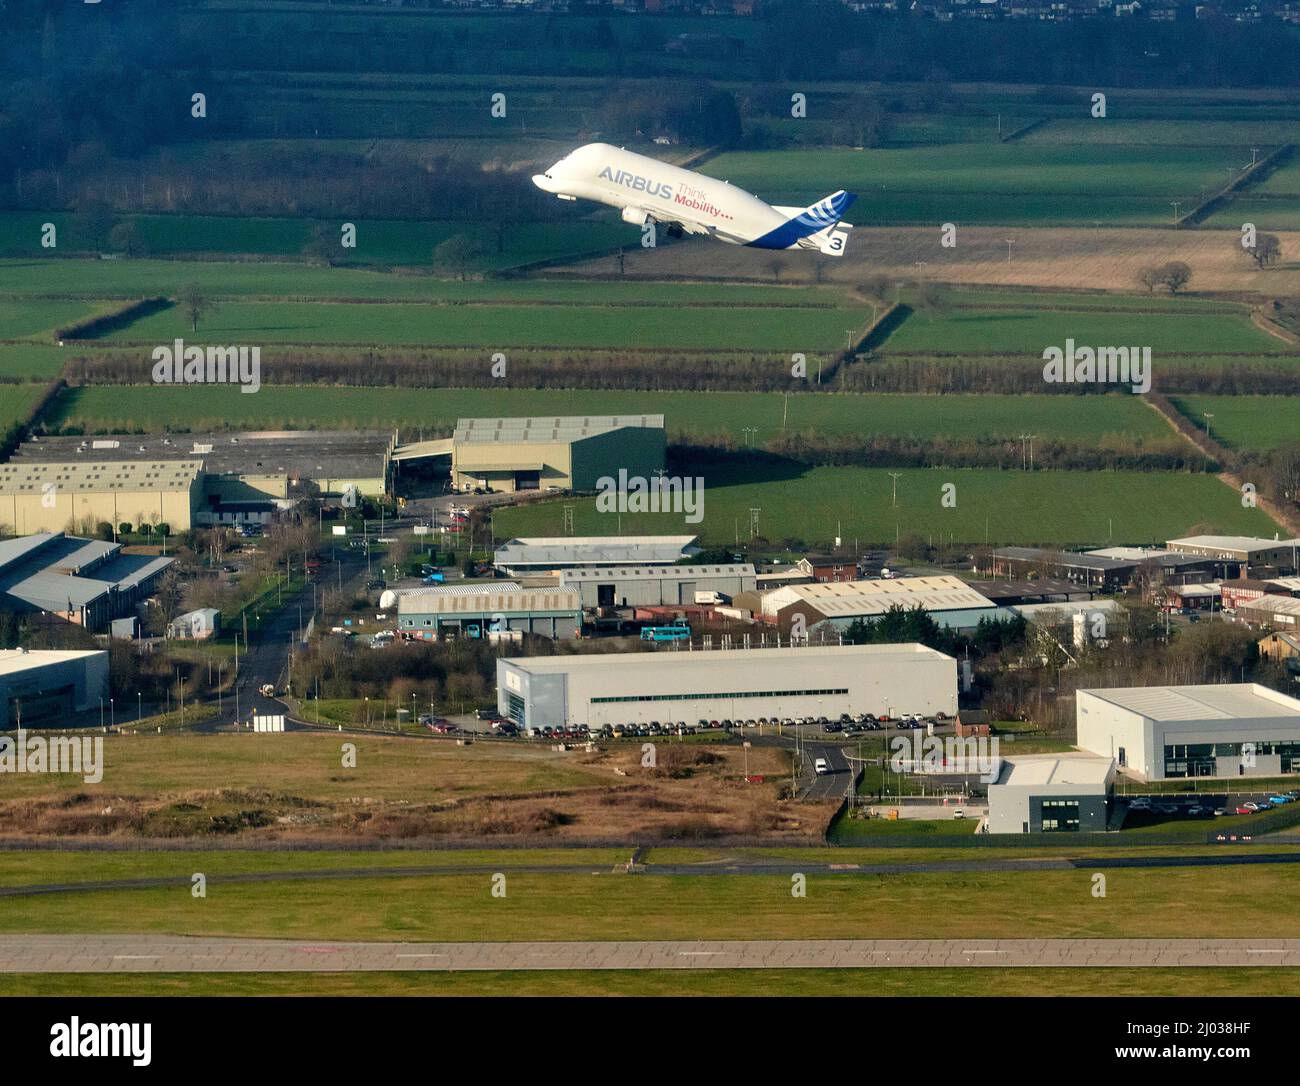 Airbus Beluga utilizzato per il trasporto di ali di aeromobili, decollo dal sito Airbus a Hawarden, Galles settentrionale, Regno Unito Foto Stock